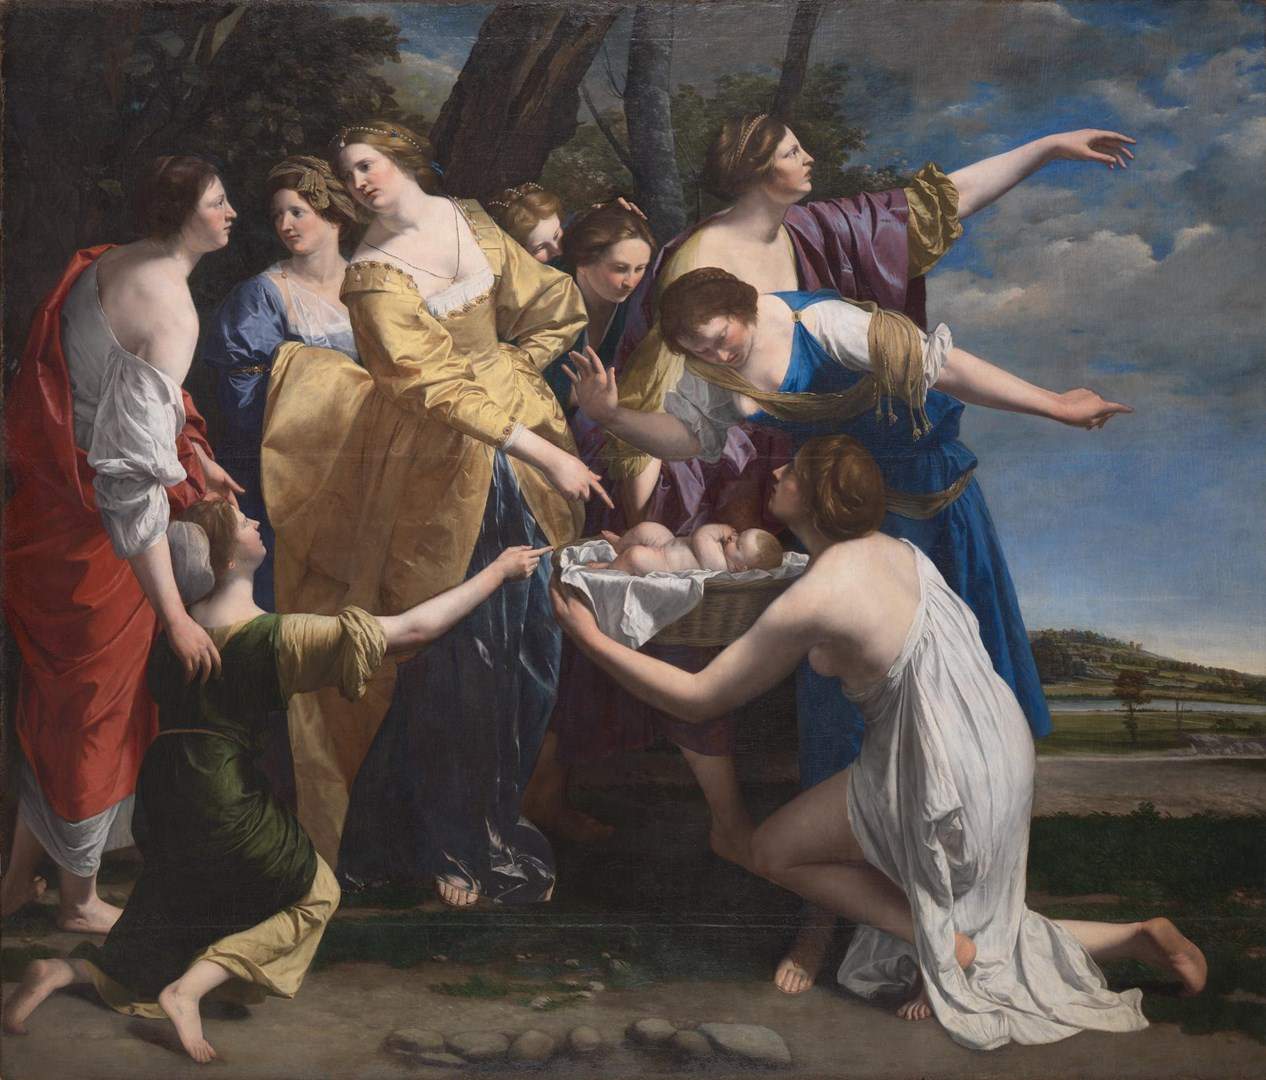 La National Gallery di Londra acquista un capolavoro di Orazio Gentileschi, il “Ritrovamento di Mosè”